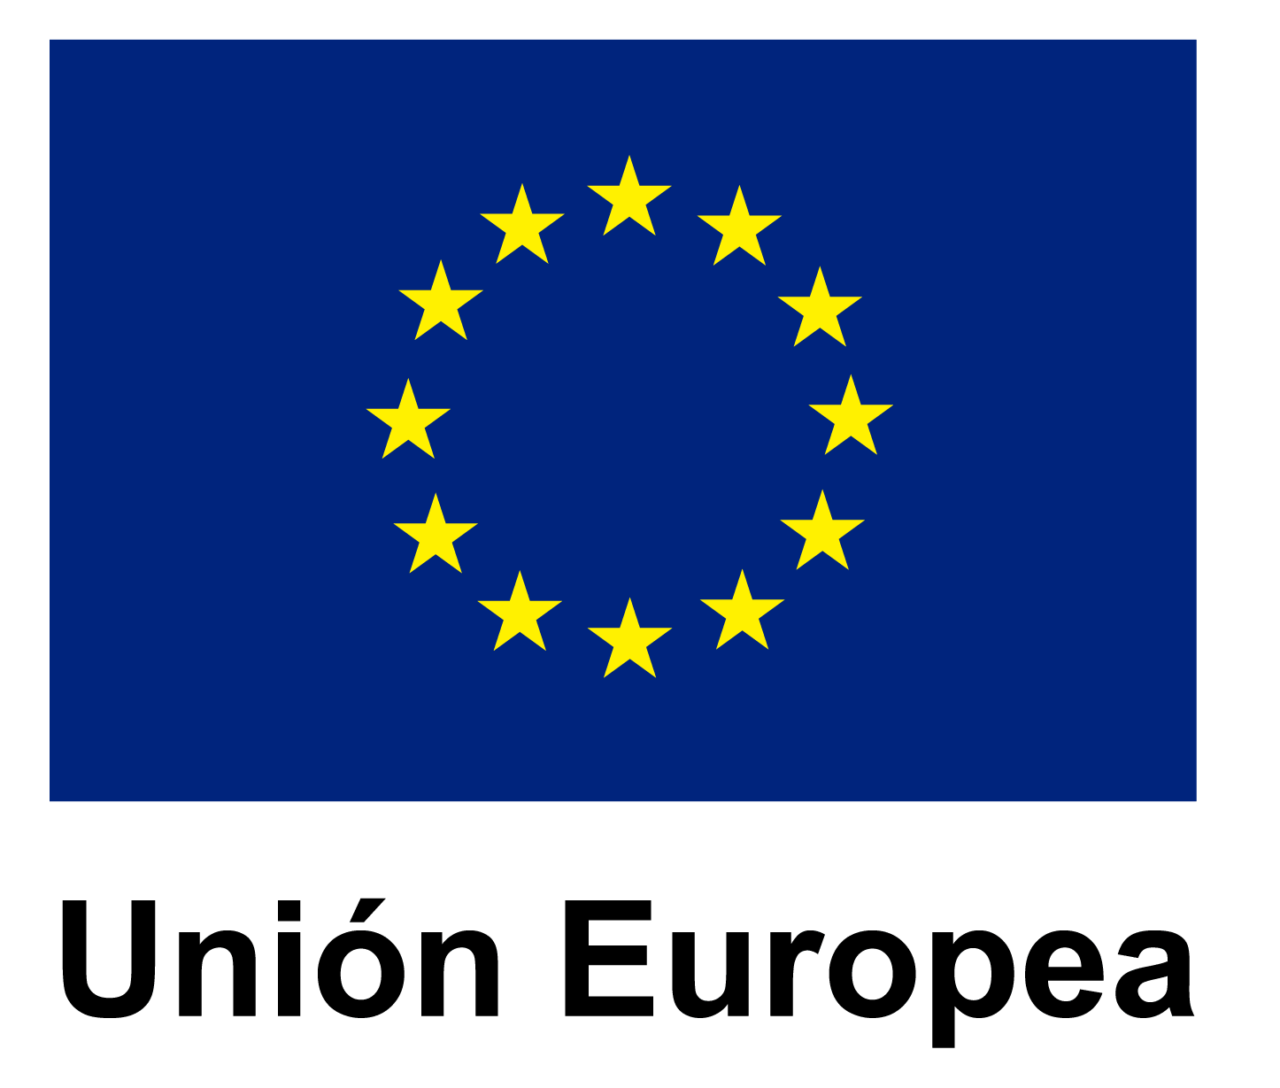 602a66d26d4a7-logo-union-europea-1280x1088.png